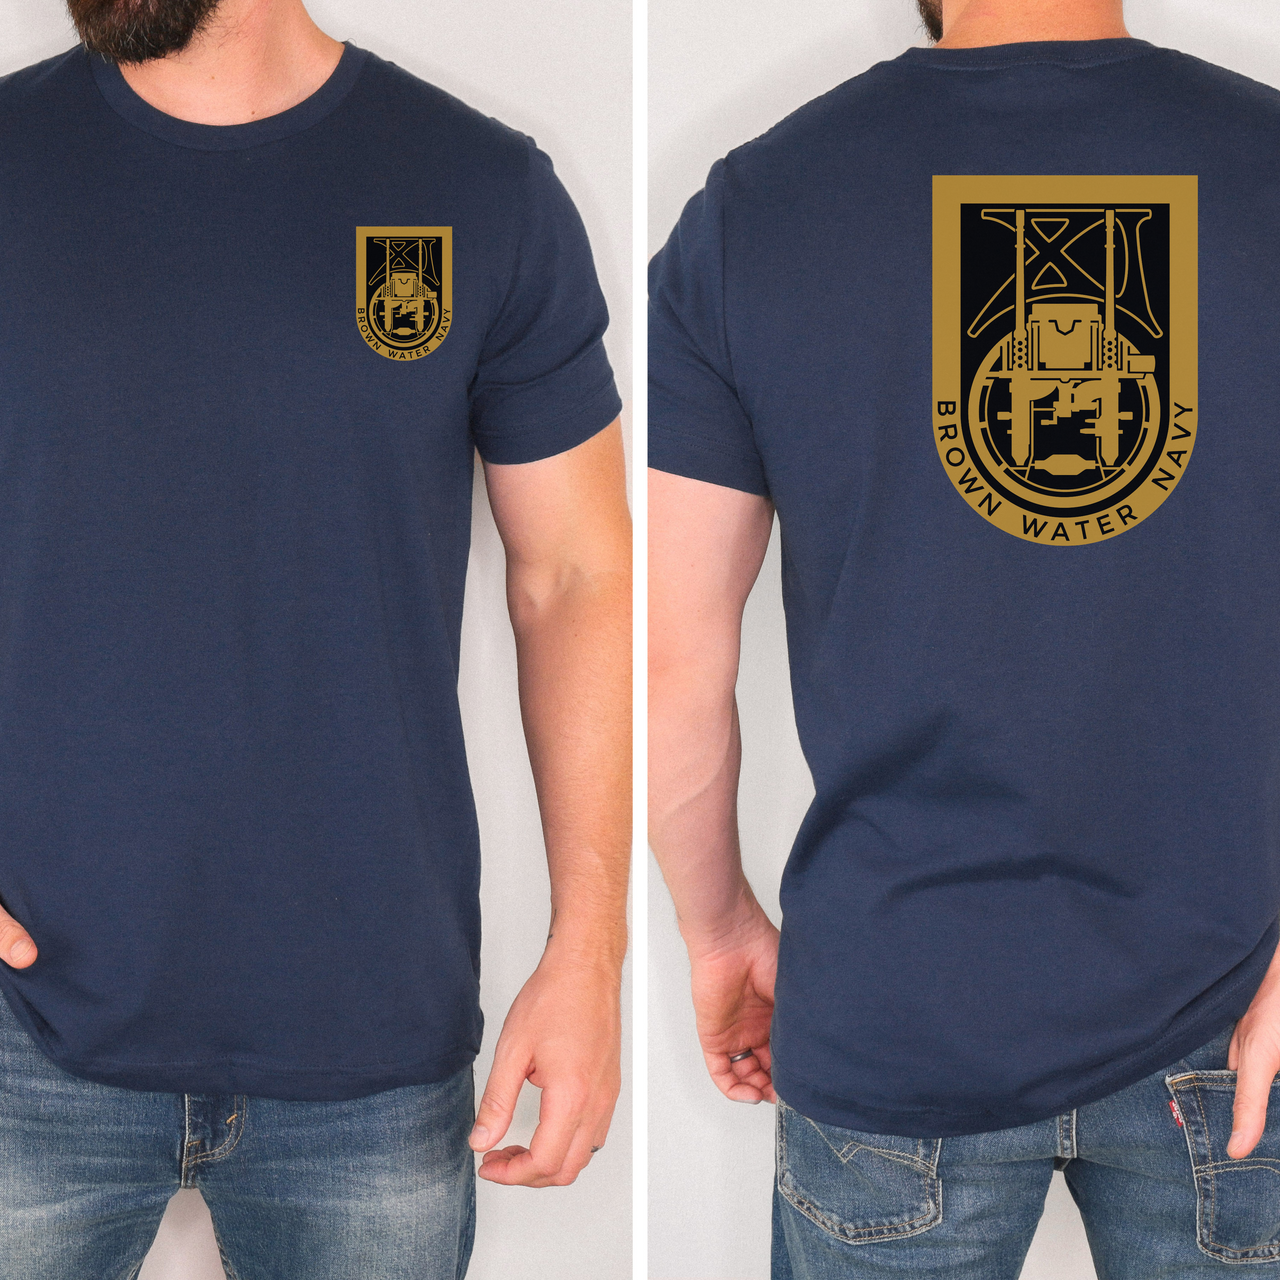 Special Boat Unit 11 v3 - SBU 11 T-Shirt (Color)